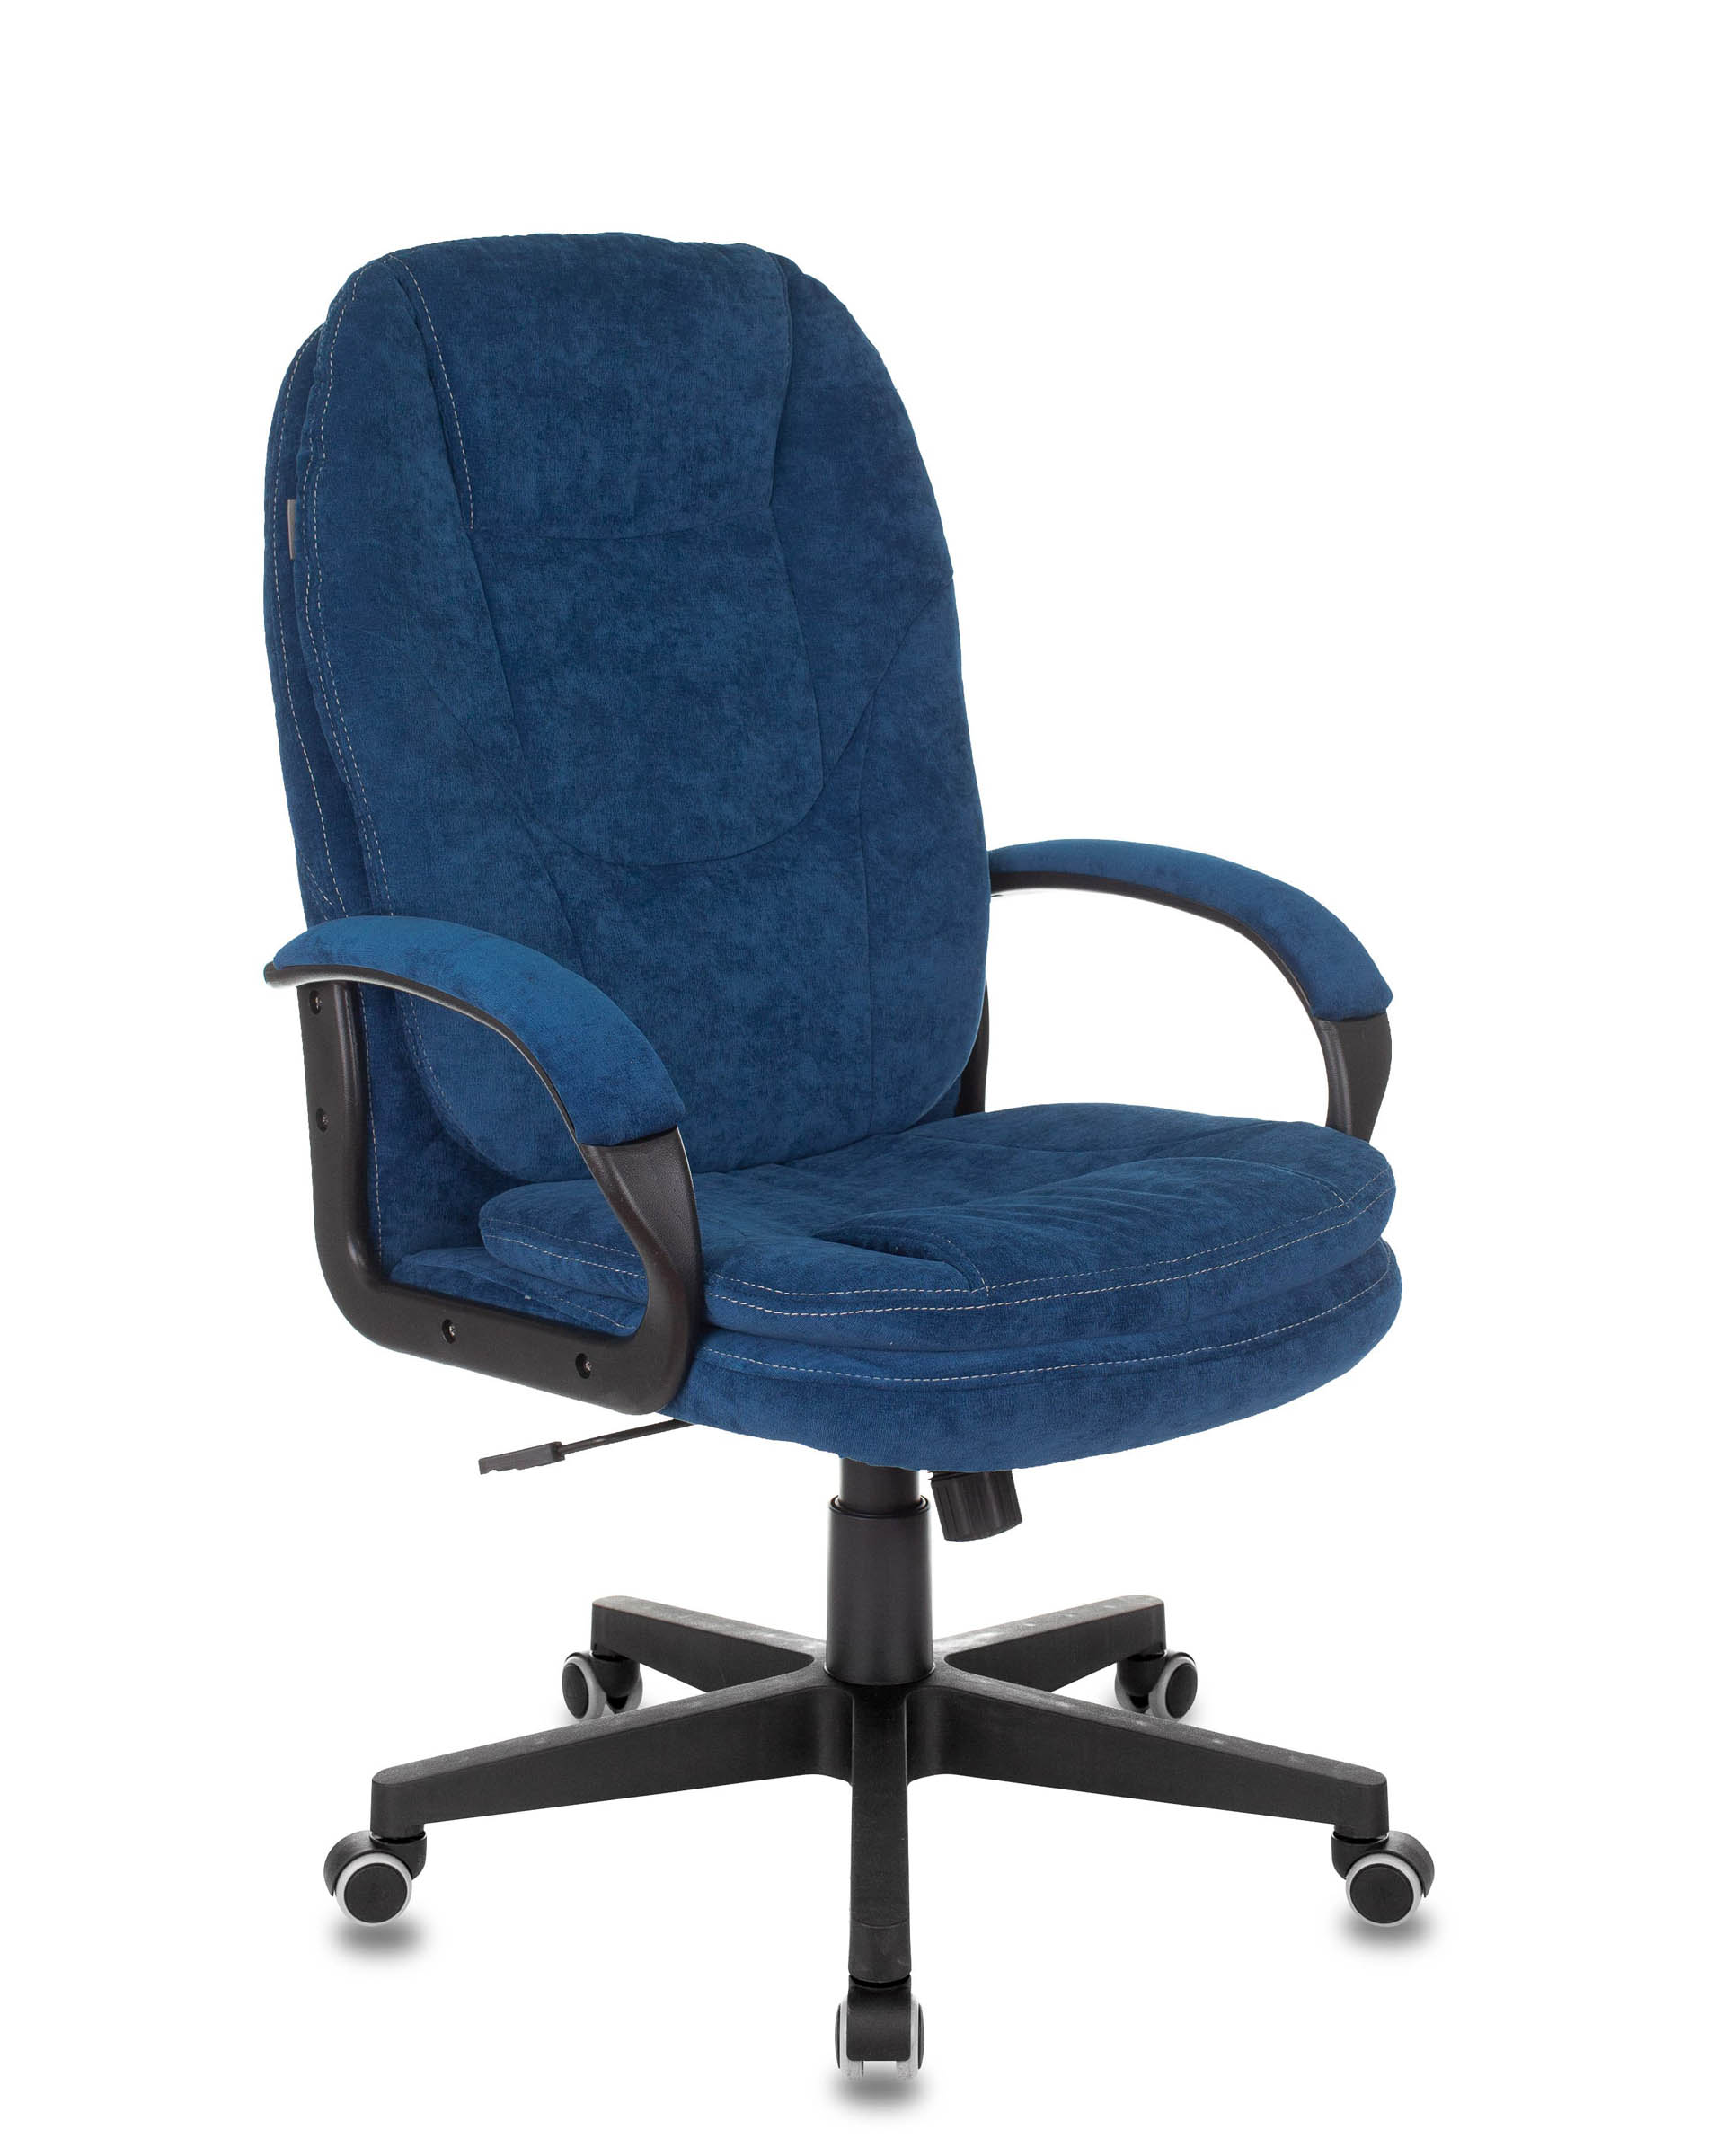 Кресло руководителя Бюрократ CH-868N Fabric темно-синий Velvet 29 крестовина пластик